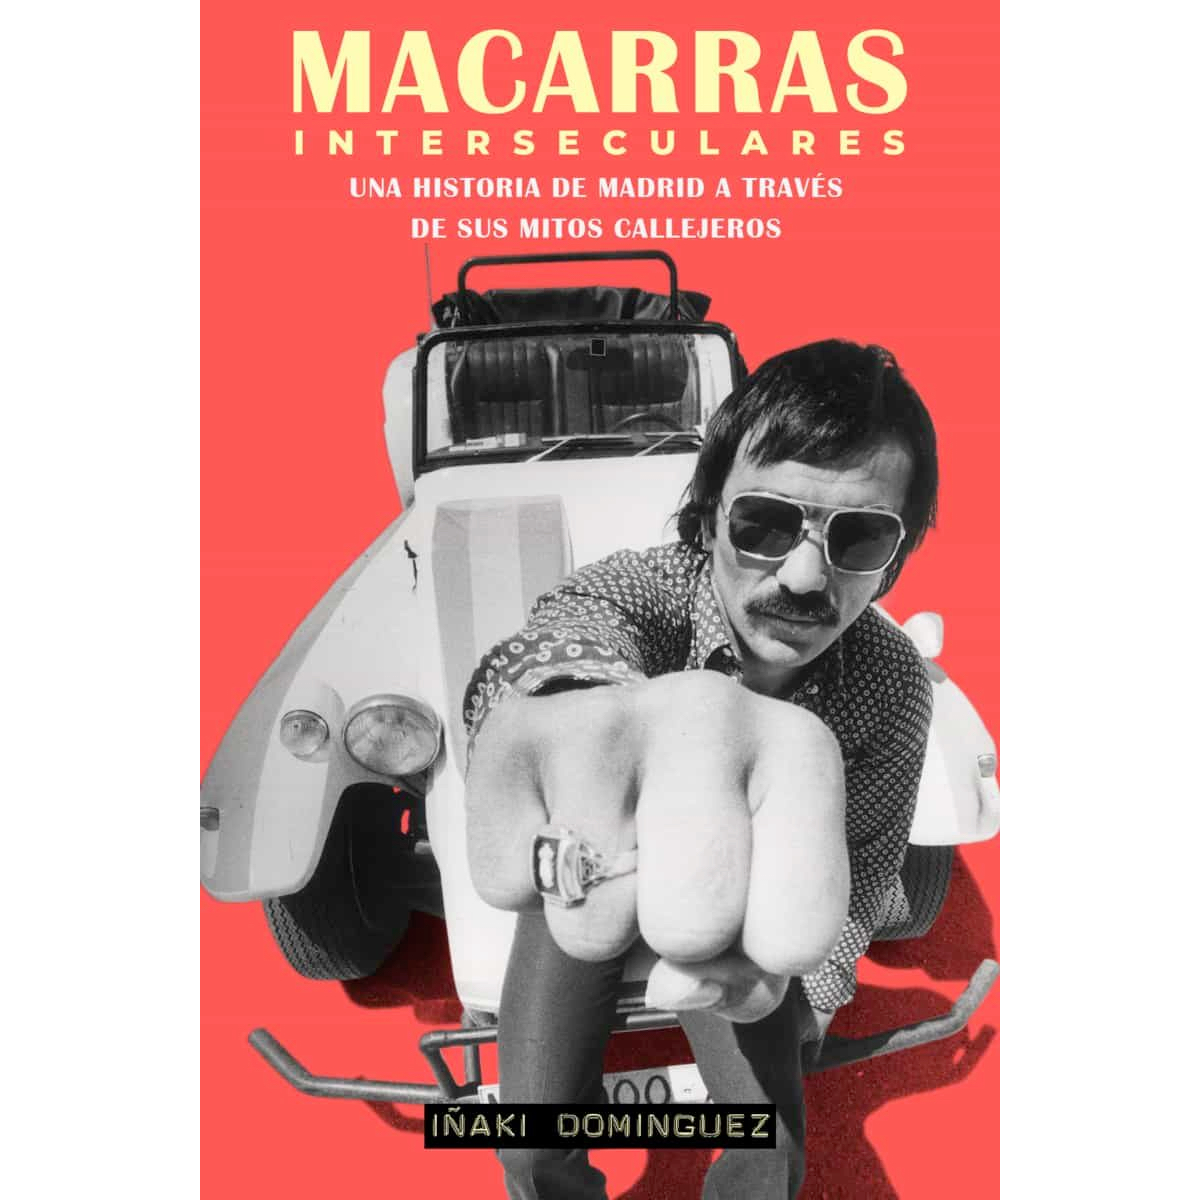 "Macarras" de Iñaki Dominguez